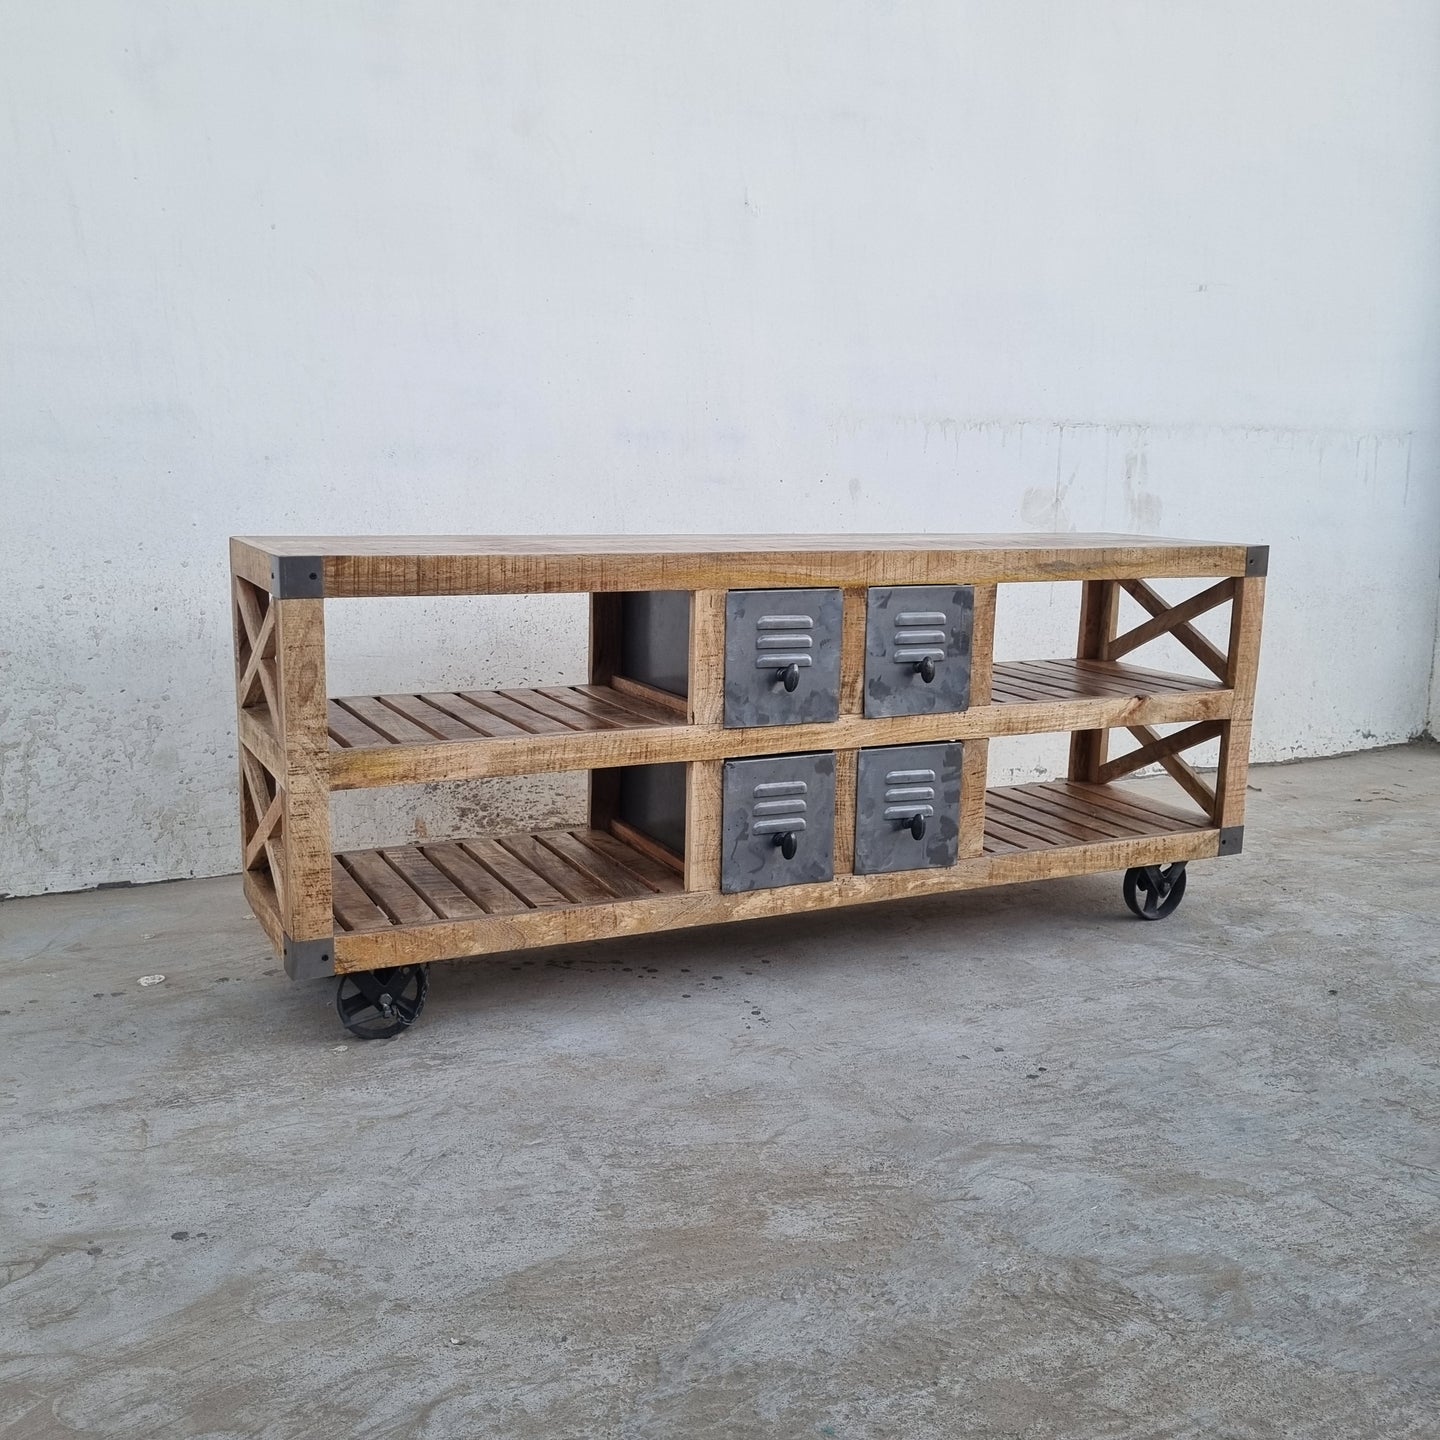 Kukuu vous présente aujourd'hui ce meuble tv ouvert à roulettes, fabriqué à partir de bois massif de manguier et métal. Mesures: 160 x 40 x 65 cm. Ce meuble tv possède 4 tiroirs en métal de couleur naturelle ainsi que 4 espaces de rangement. Kukuu, boutique en ligne de mobilier d'intérieur de style industriel.